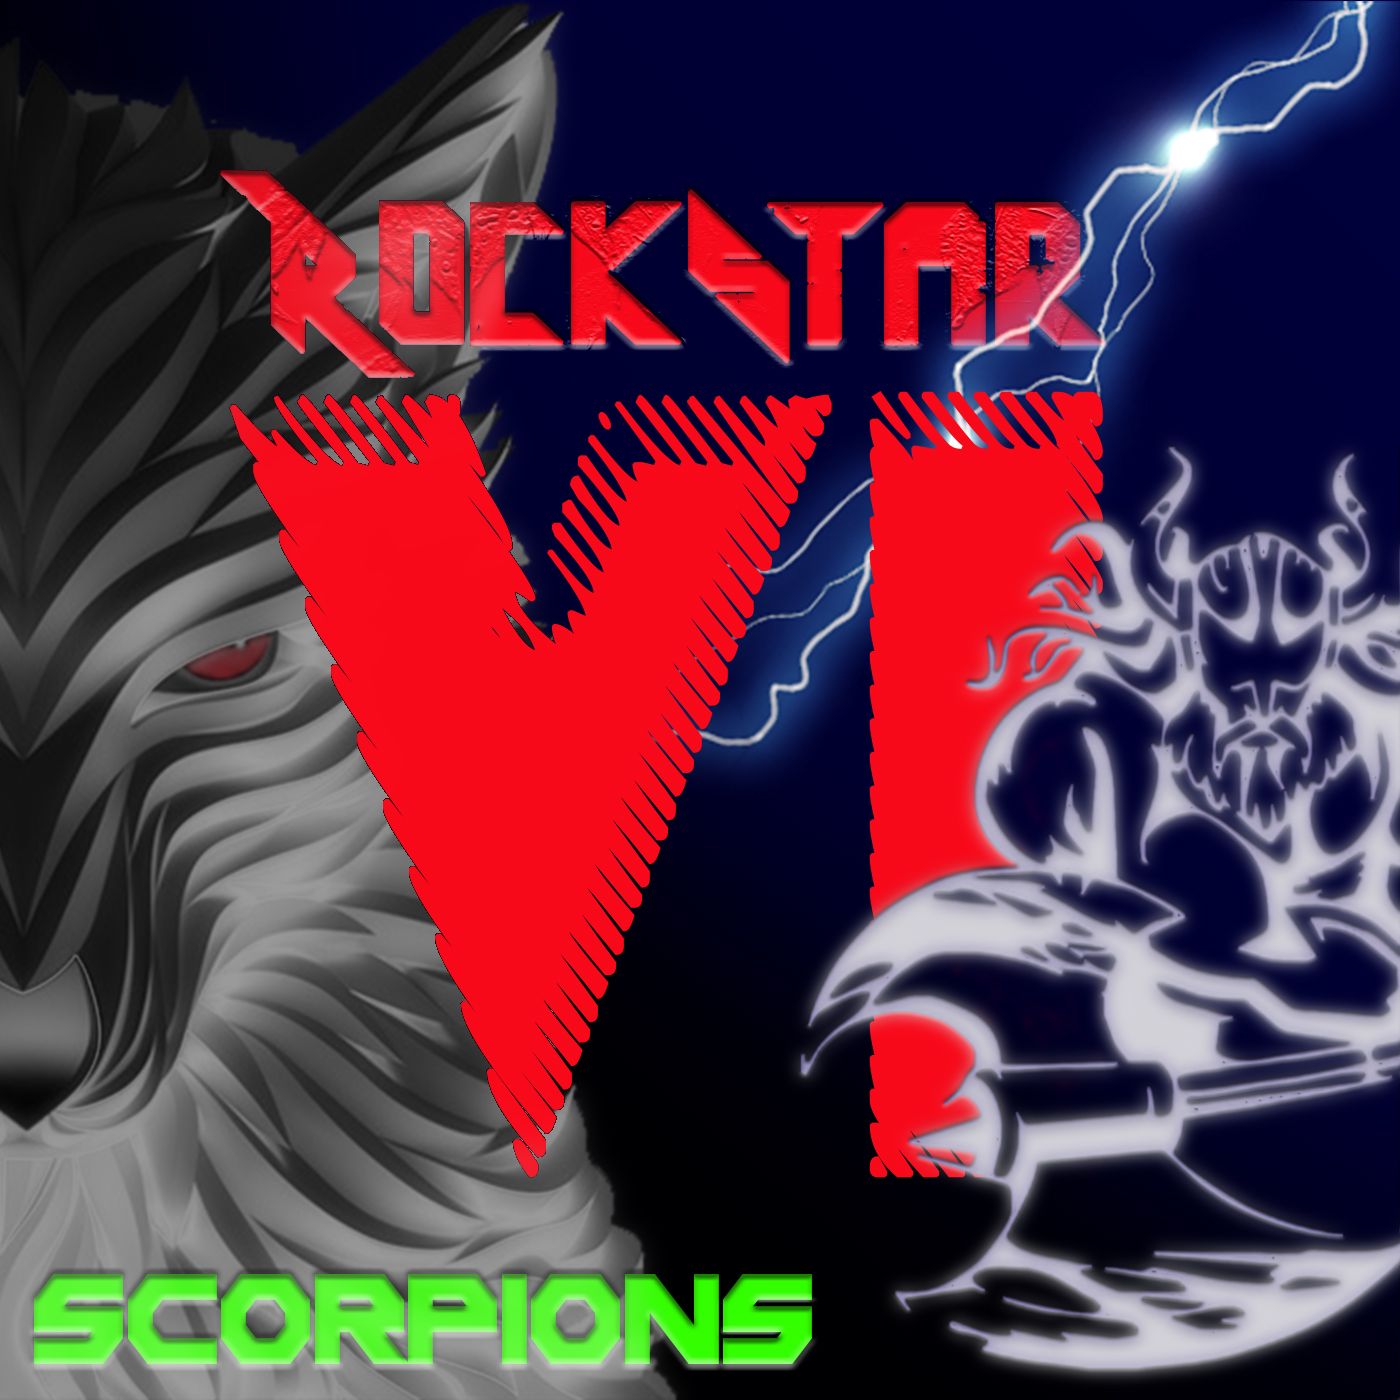 Gli Scorpions e il prog rock